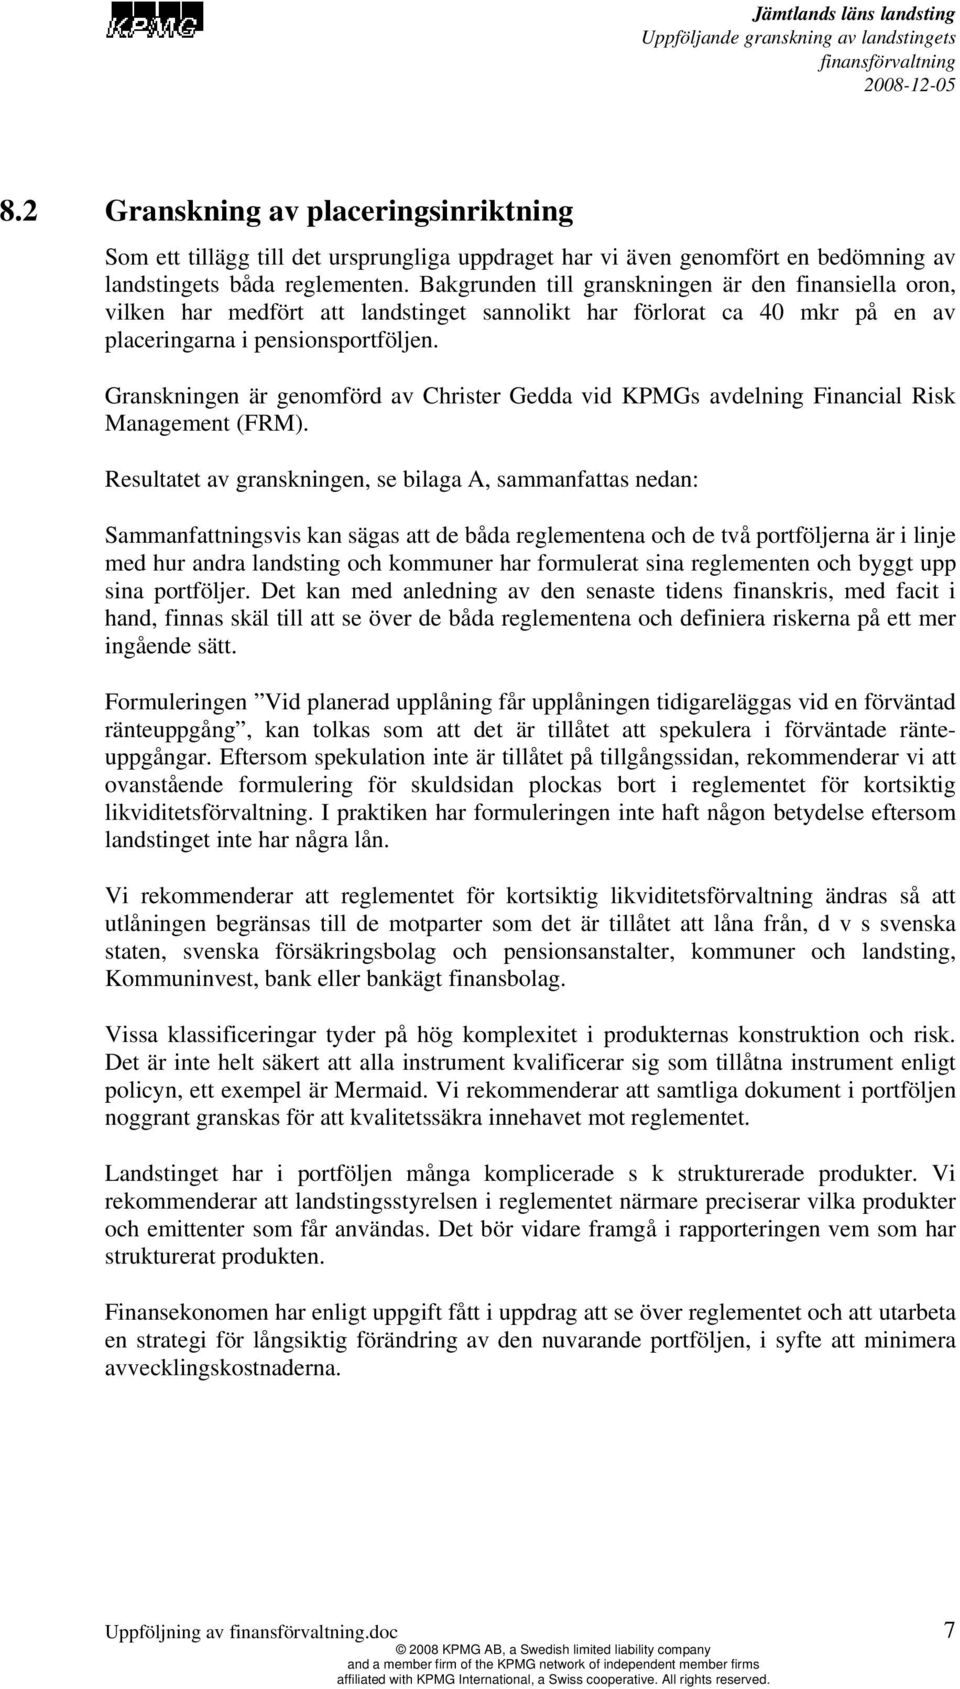 Granskningen är genomförd av Christer Gedda vid KPMGs avdelning Financial Risk Management (FRM).